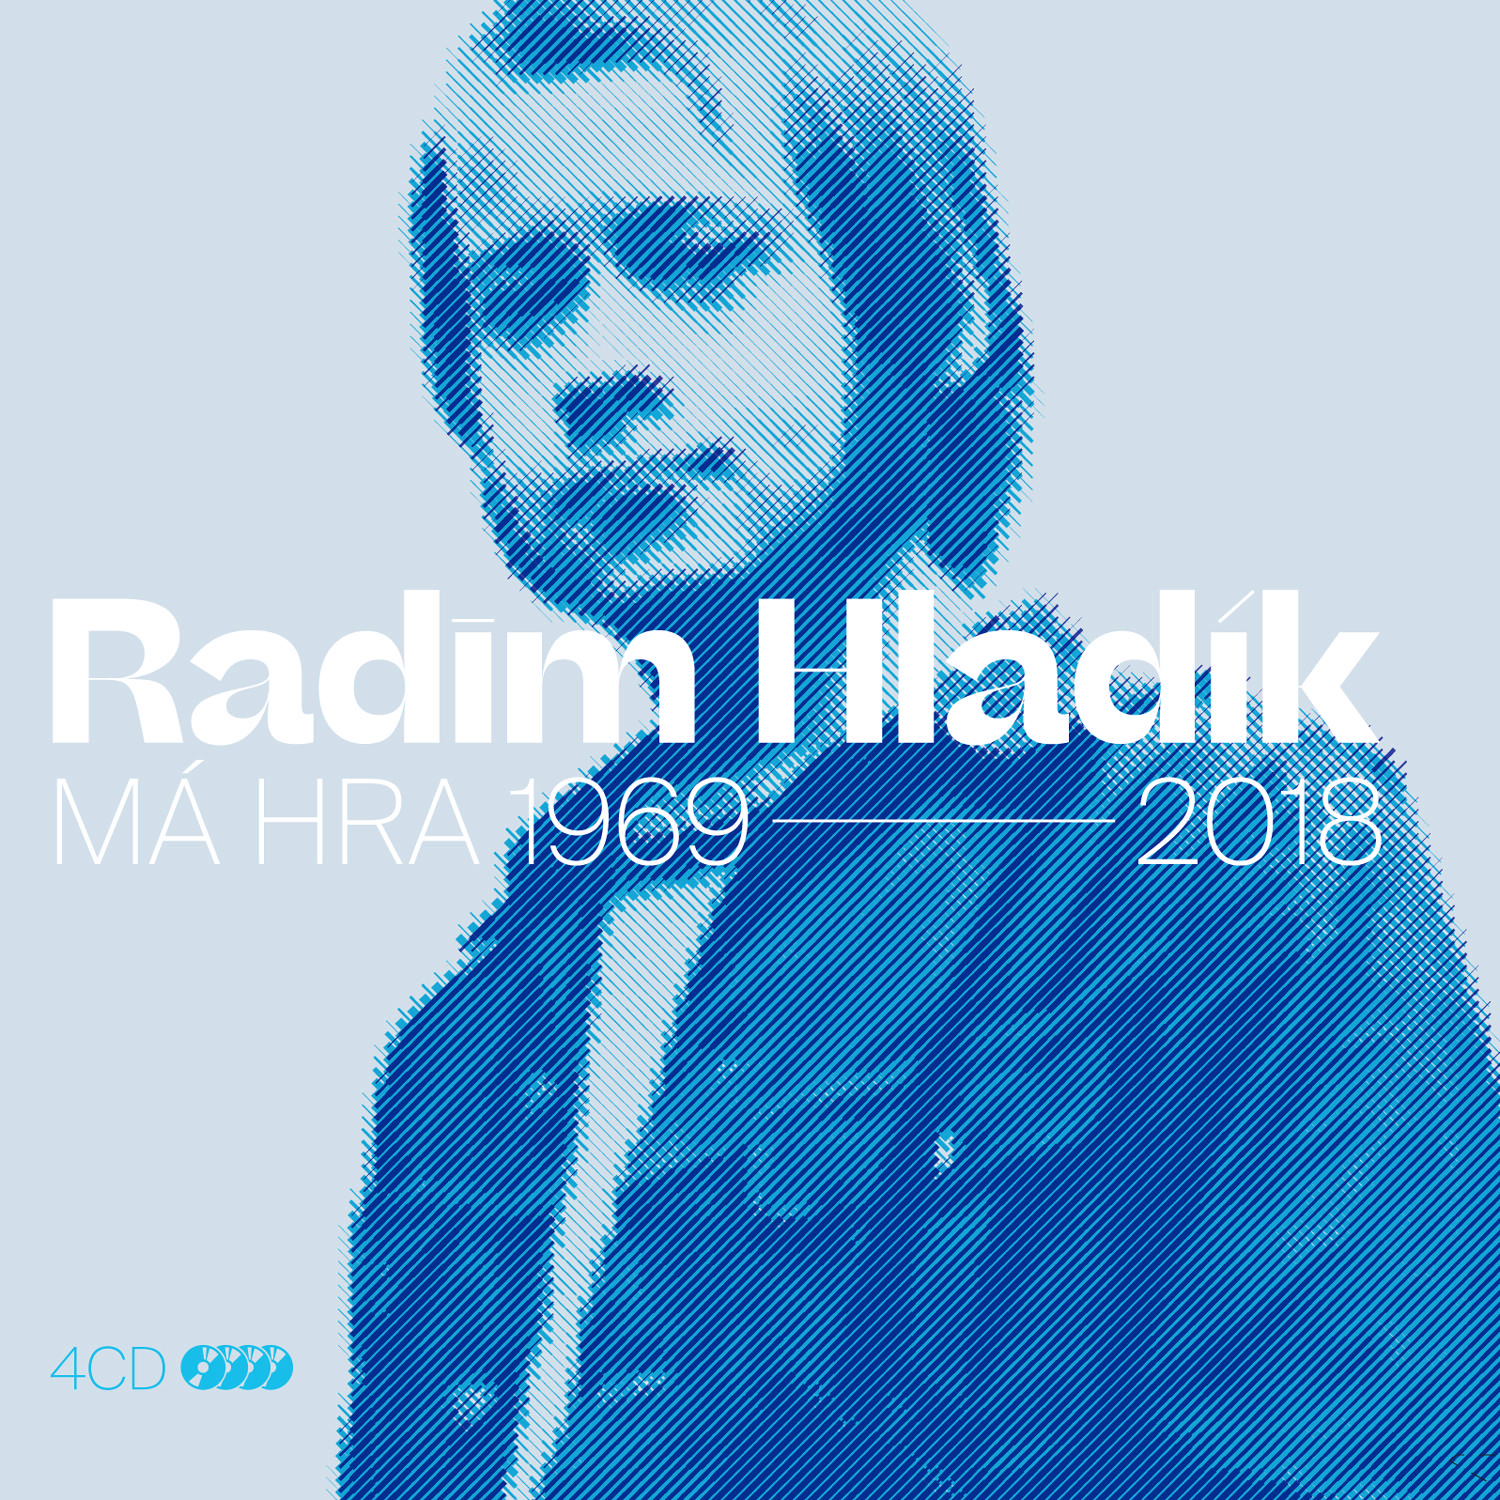 CD Shop - HLADIK RADIM MA HRA 1969-2018